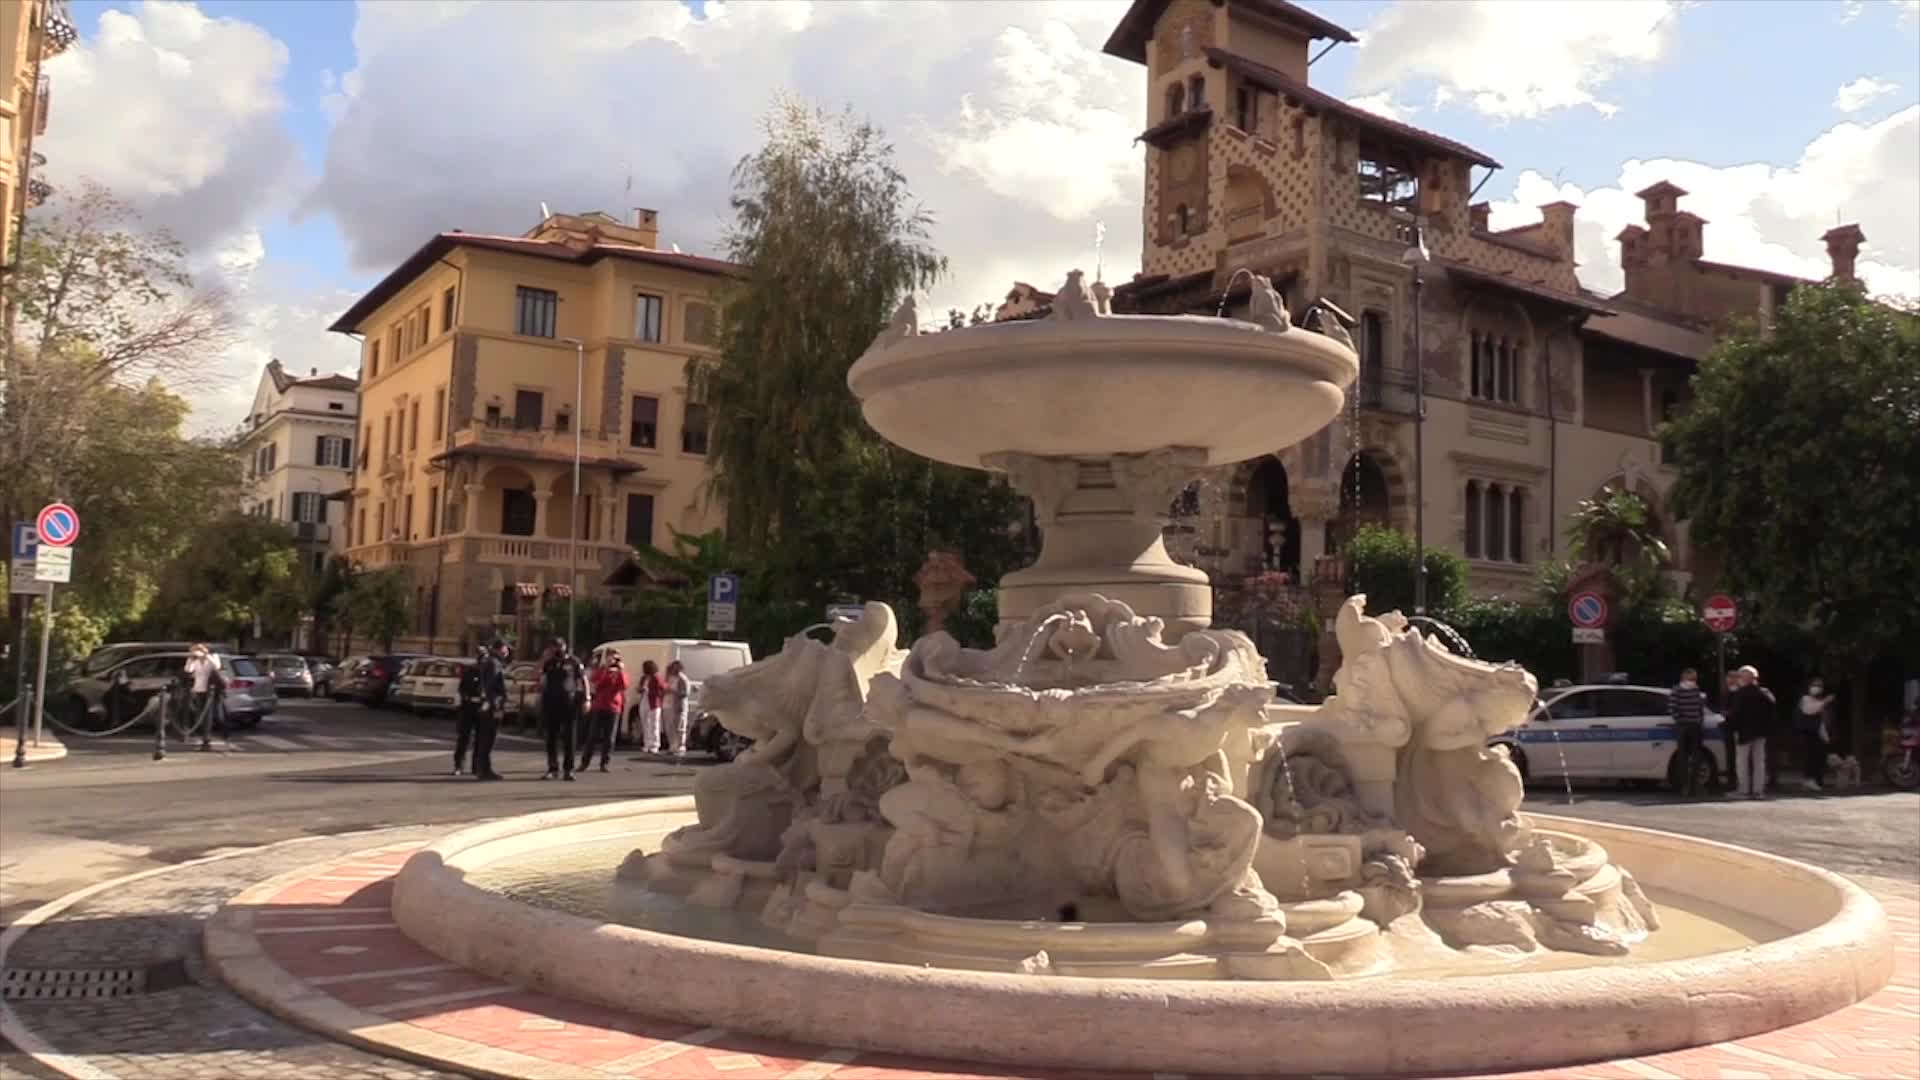 A Roma torna a zampillare la Fontana delle Rane